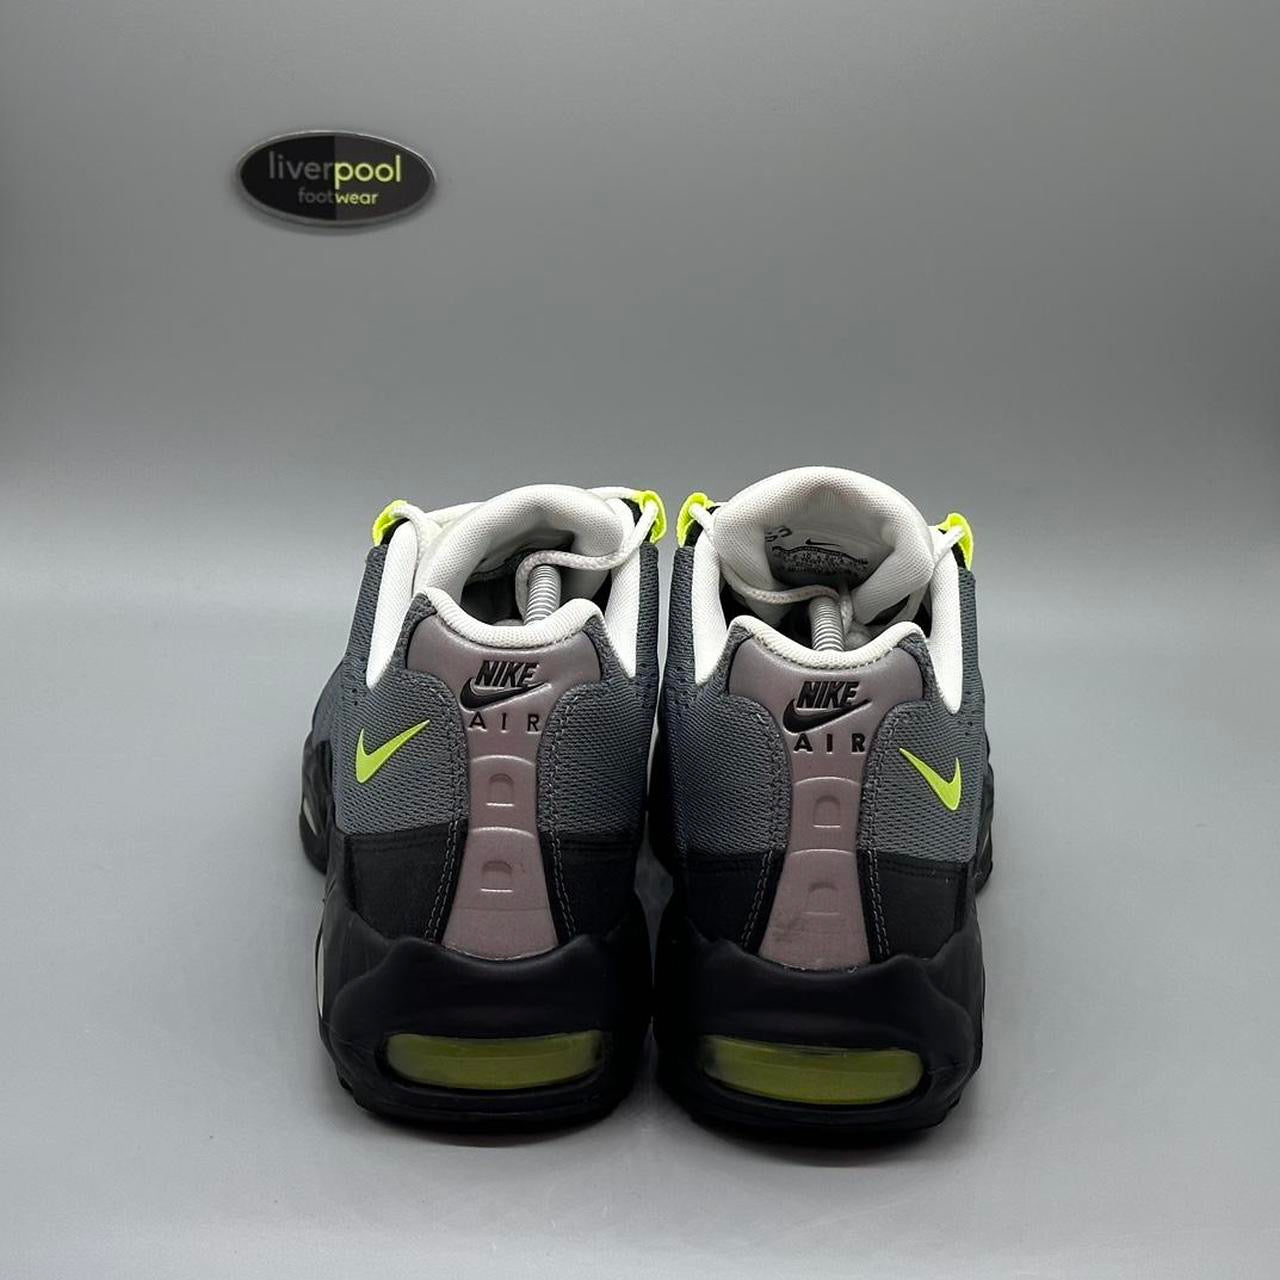 Nike Air Max 95 EM - Neon